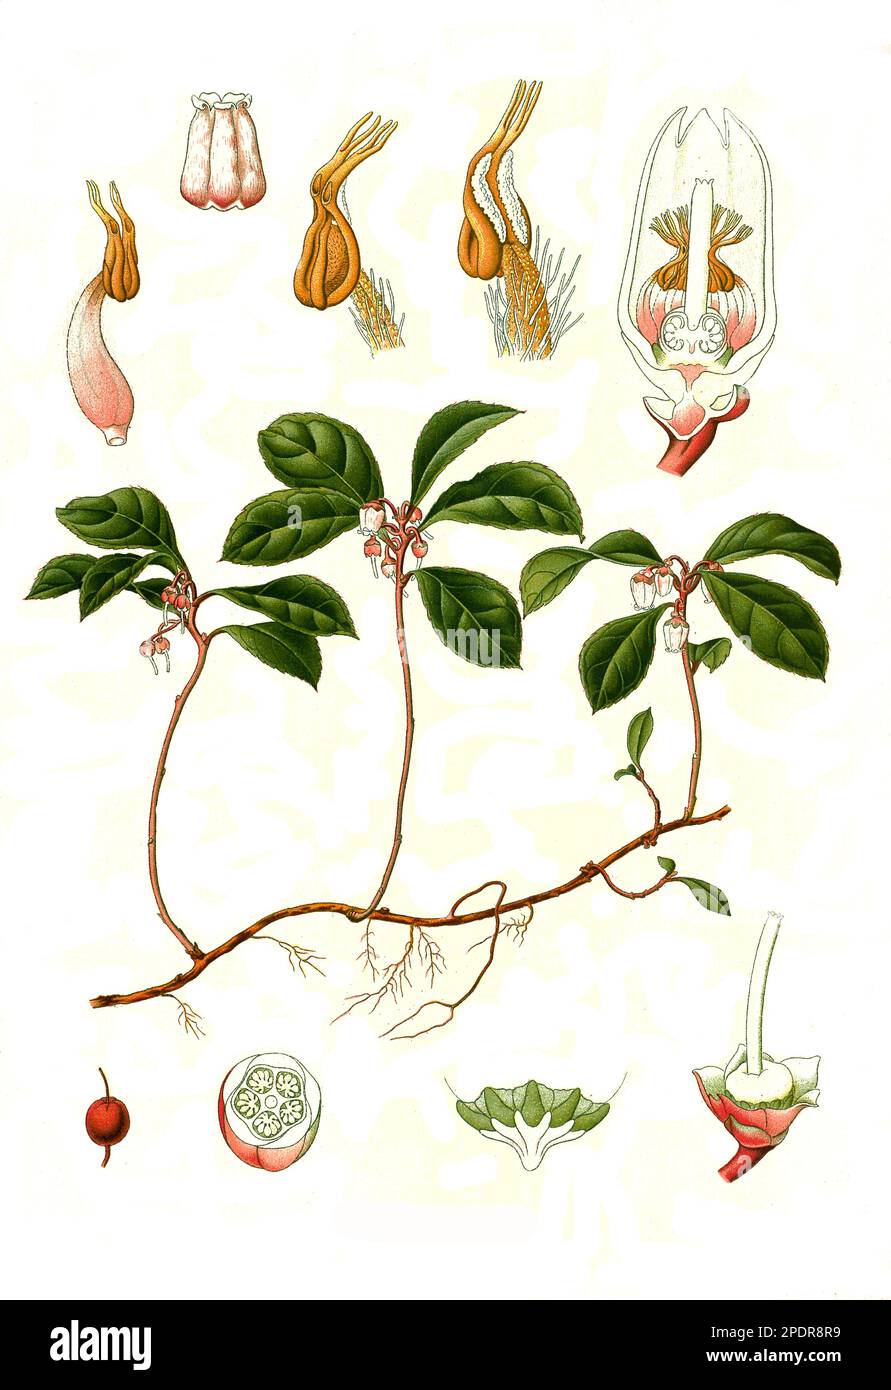 Heilpflanze, Niedere Scheinbeere (Gaultheria procumbens), auch Wintergrün oder rote Teppichbeere, Historisch, digital restaurierte Reproduktion von einer Vorlage aus dem 18. Jahrhundert Stock Photo